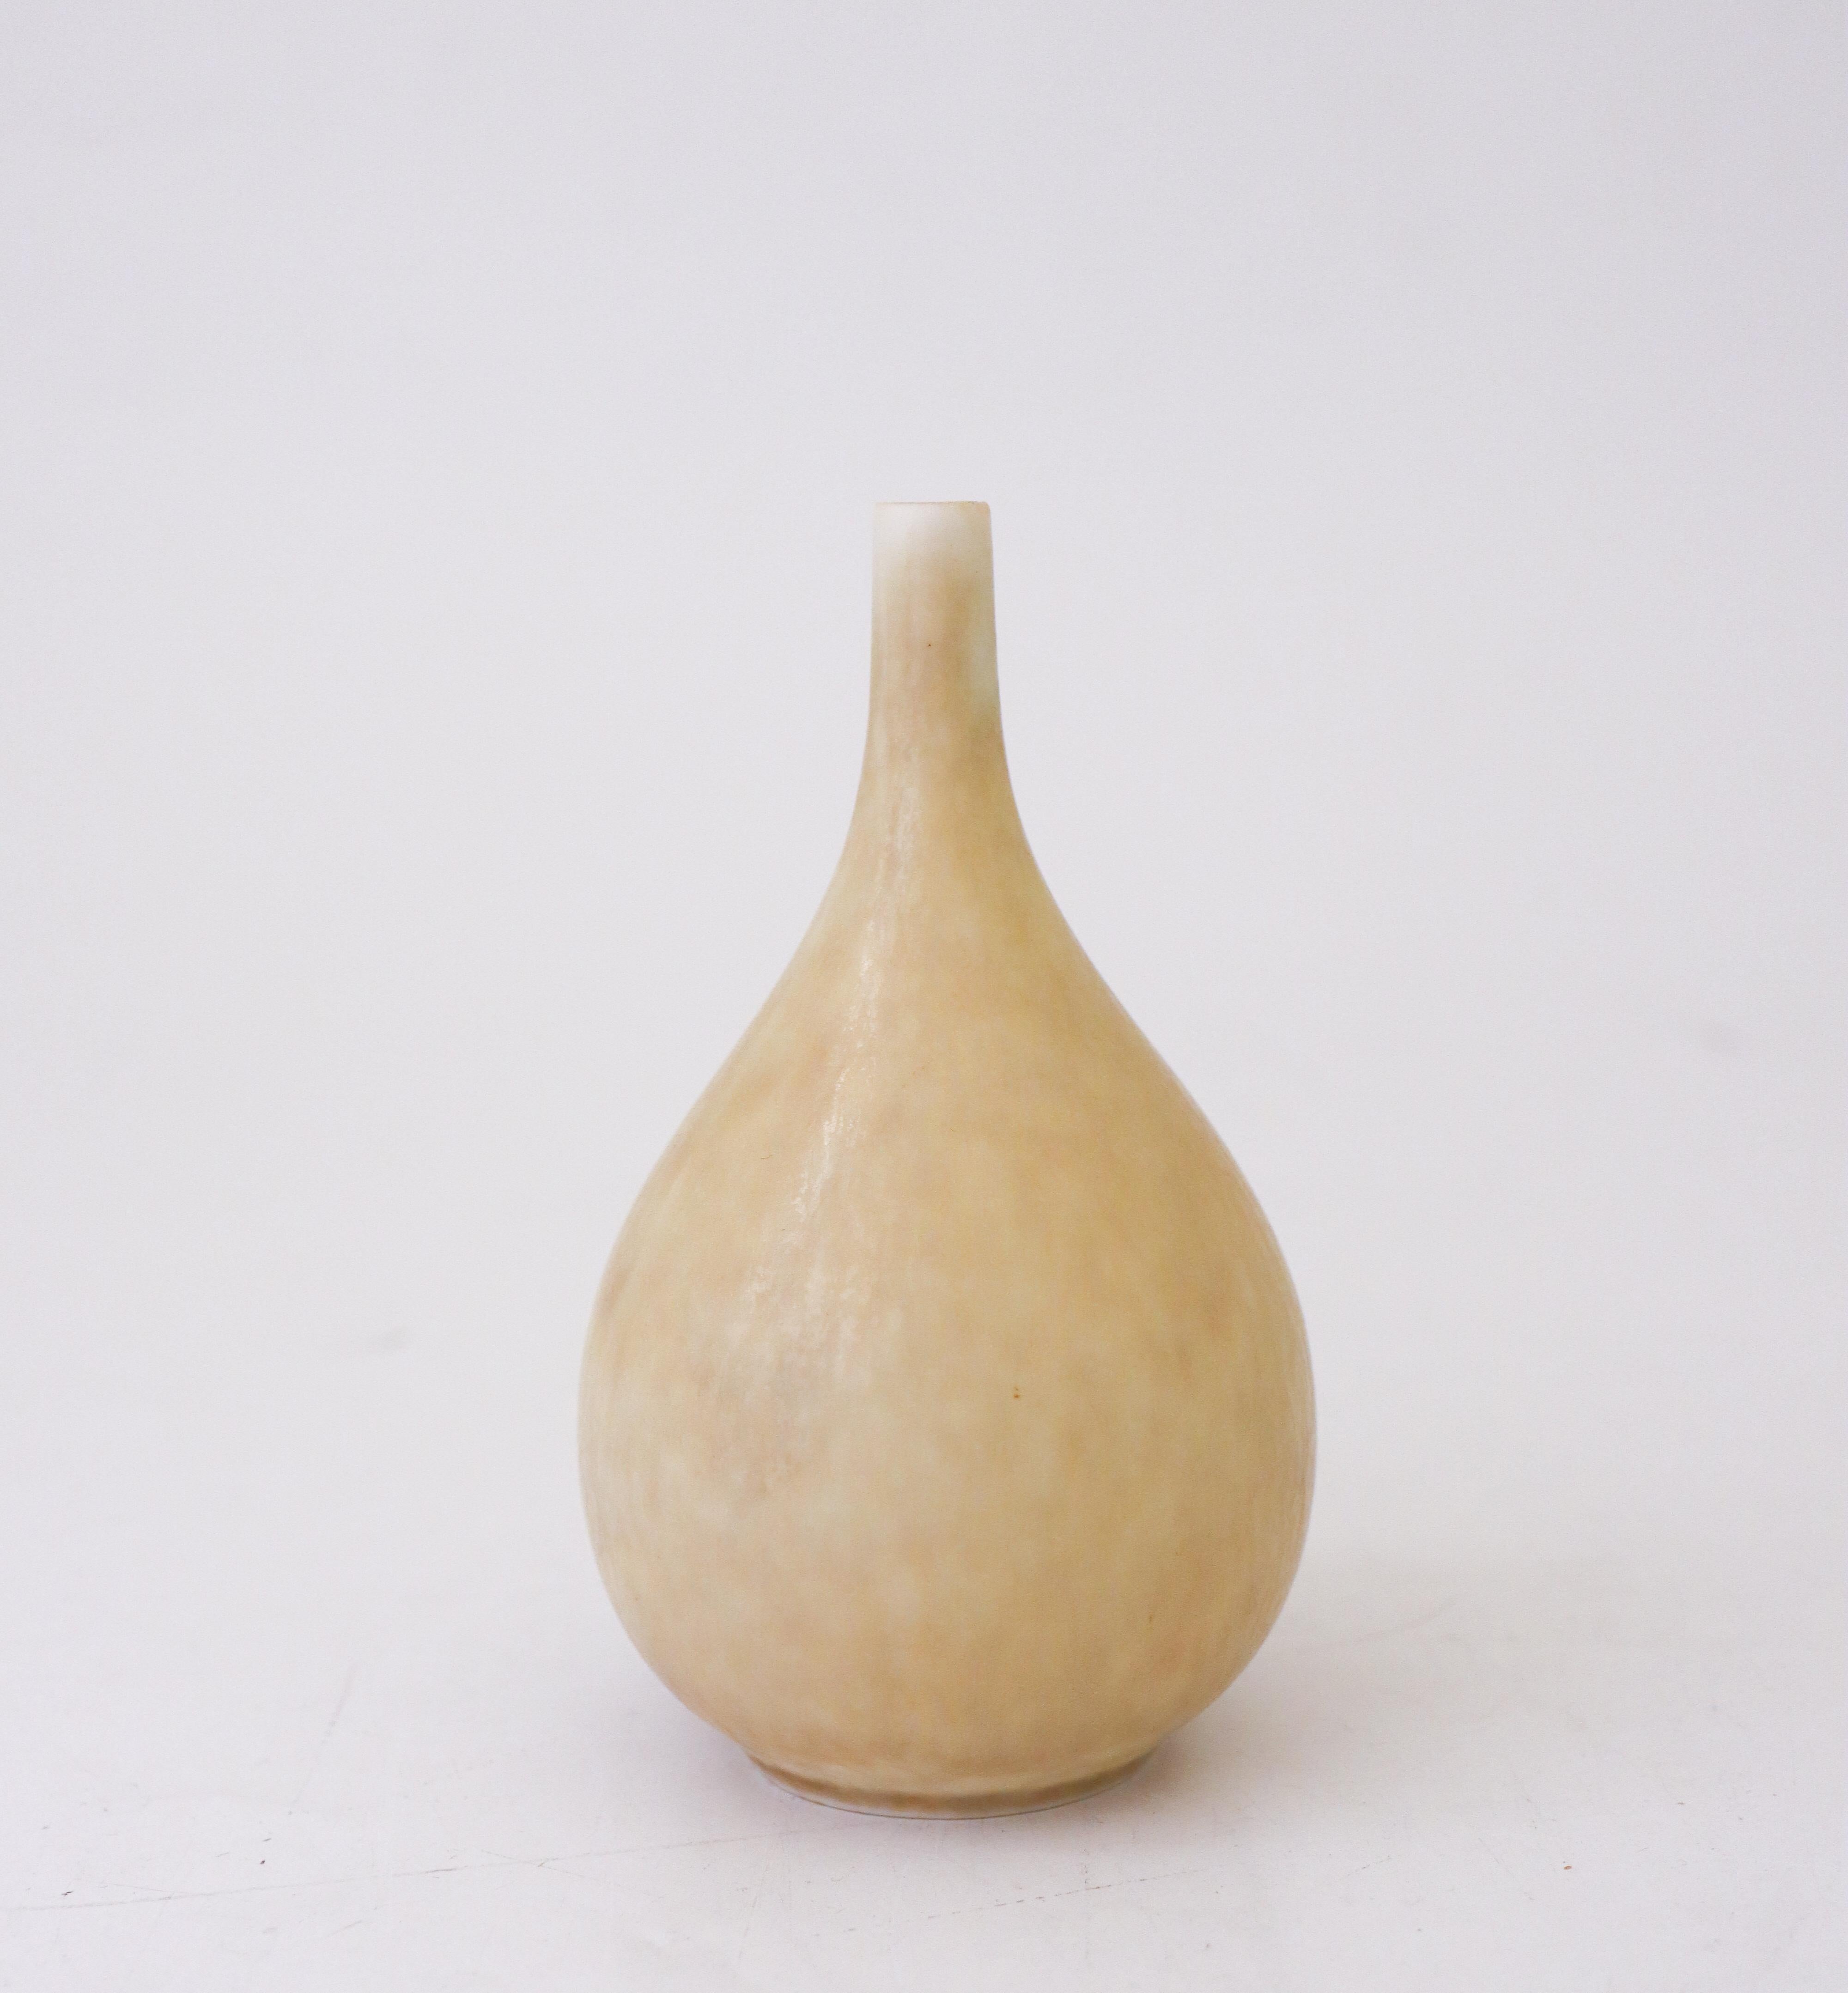 Vase en céramique à glaçure jaune/jaune clair (beige) conçu par Carl-Harry Stålhane chez Rörstrand. Le vase mesure 13 cm de haut et 7,5 cm de diamètre. Il est en très bon état, à l'exception de quelques marques mineures dans la glaçure, ce qui